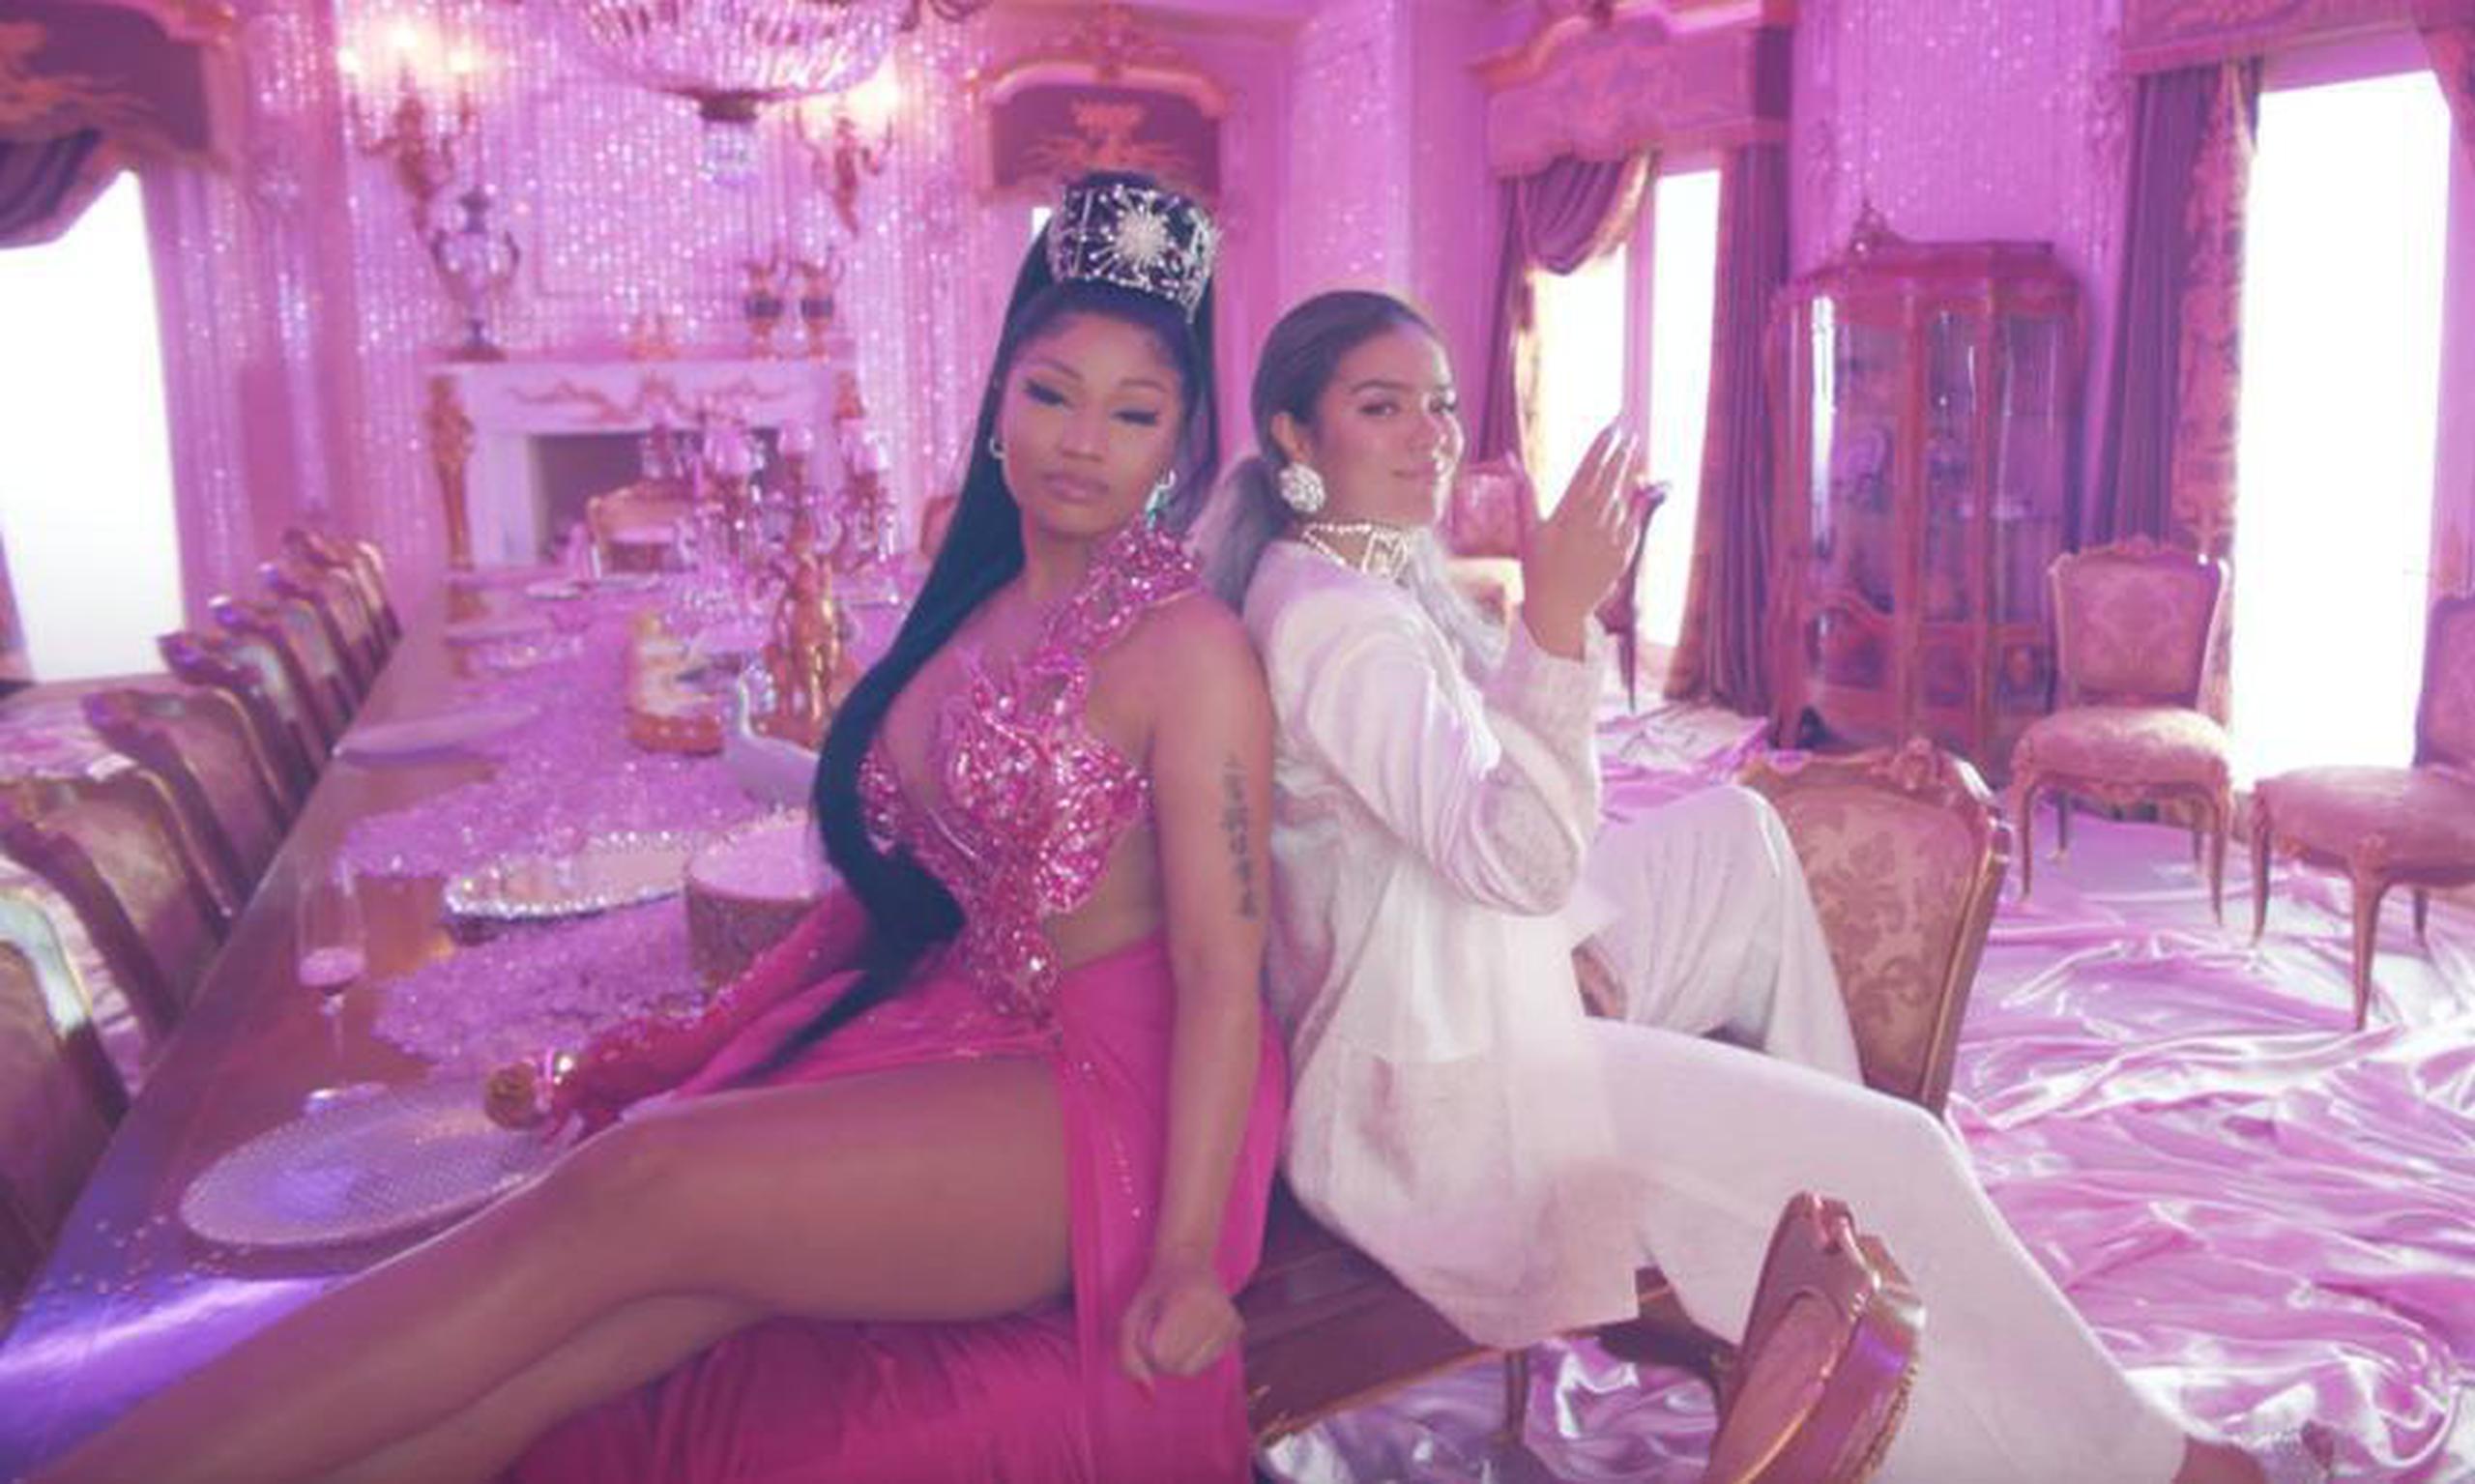 La colaboración entre Nicki Minaj y Karol G en el tema "Tusa" encabeza todas las listas.